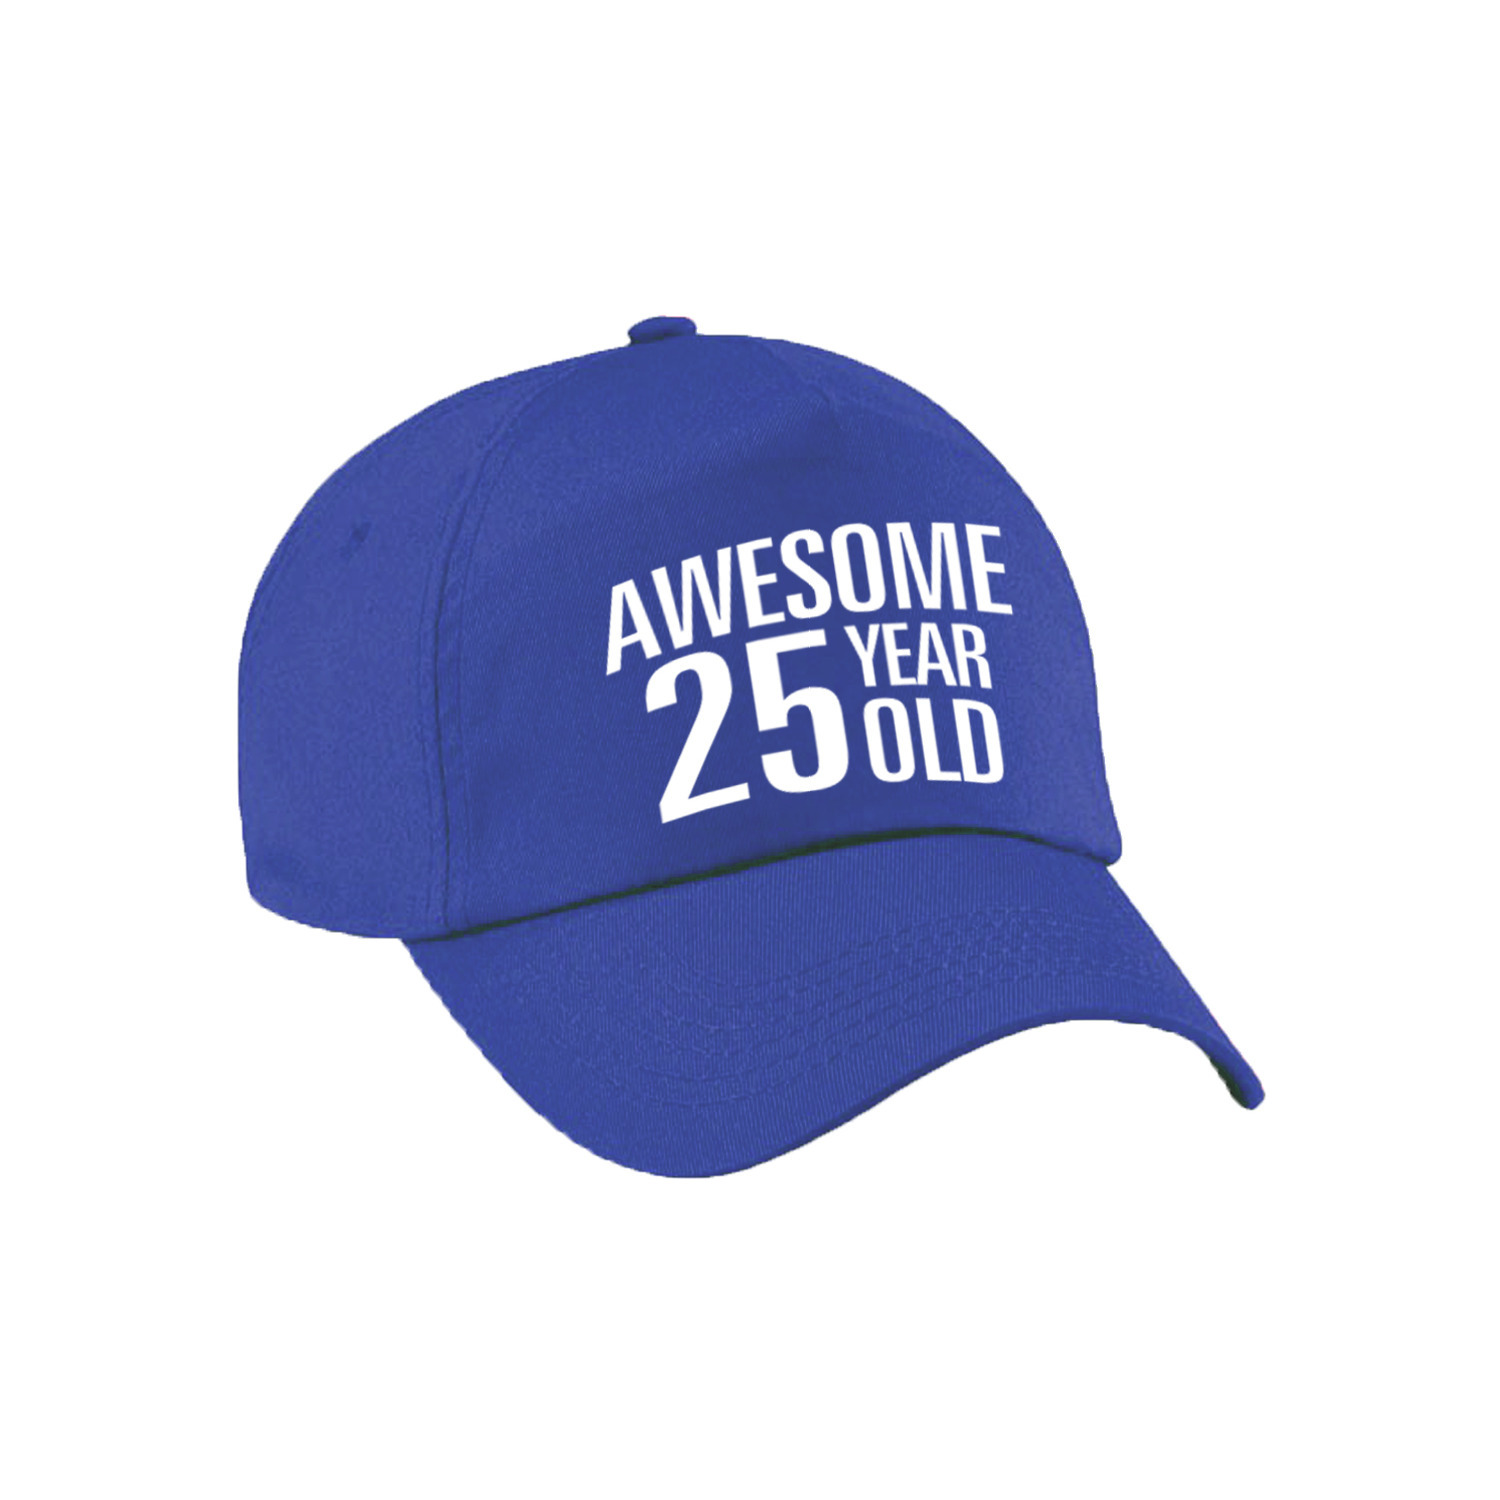 Awesome 25 year old verjaardag pet-cap blauw voor dames en heren